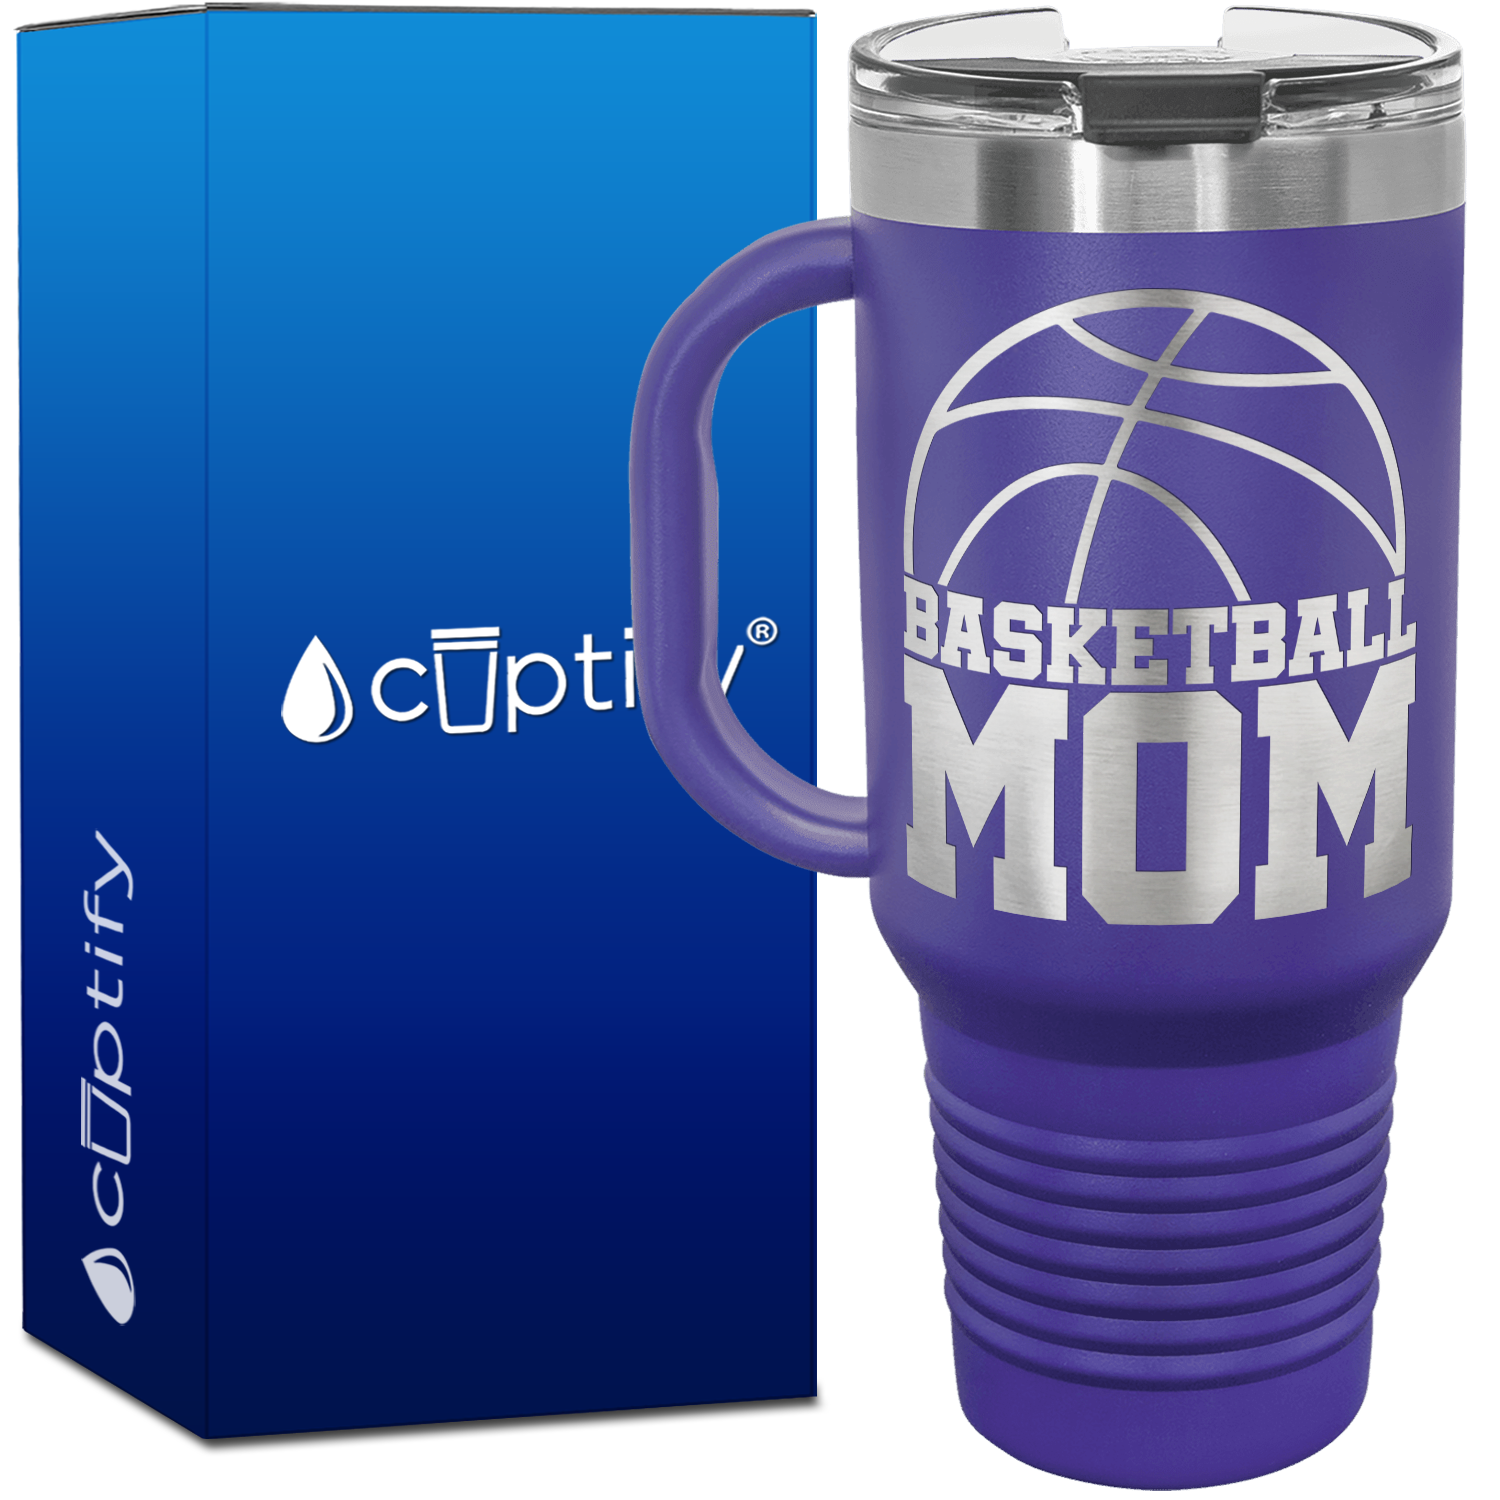 Basketball Mom 40oz Basketball Travel Mug